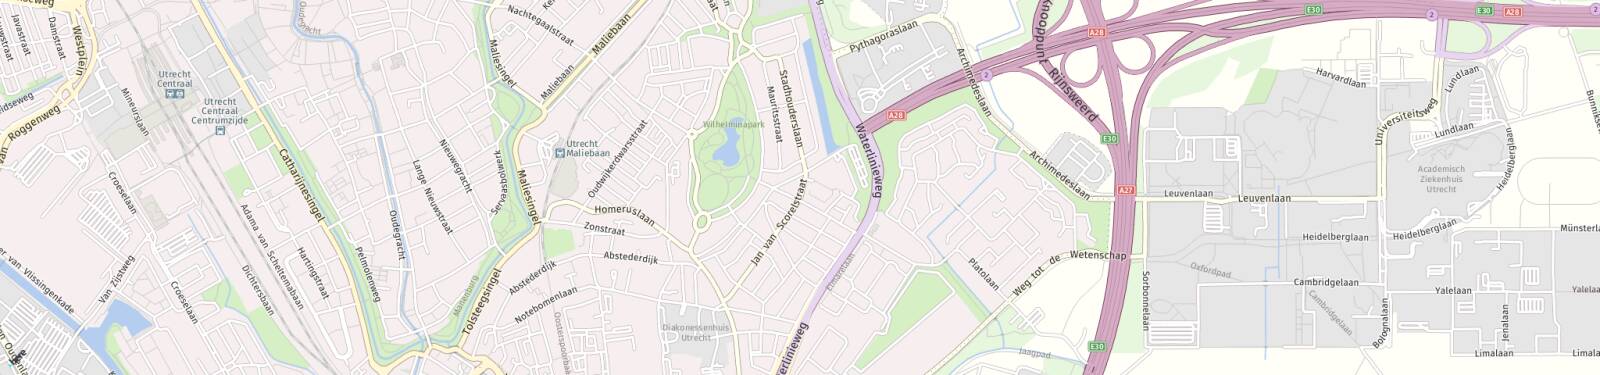 Kaart met locatie Huurwoning Jan van Scorelstraat